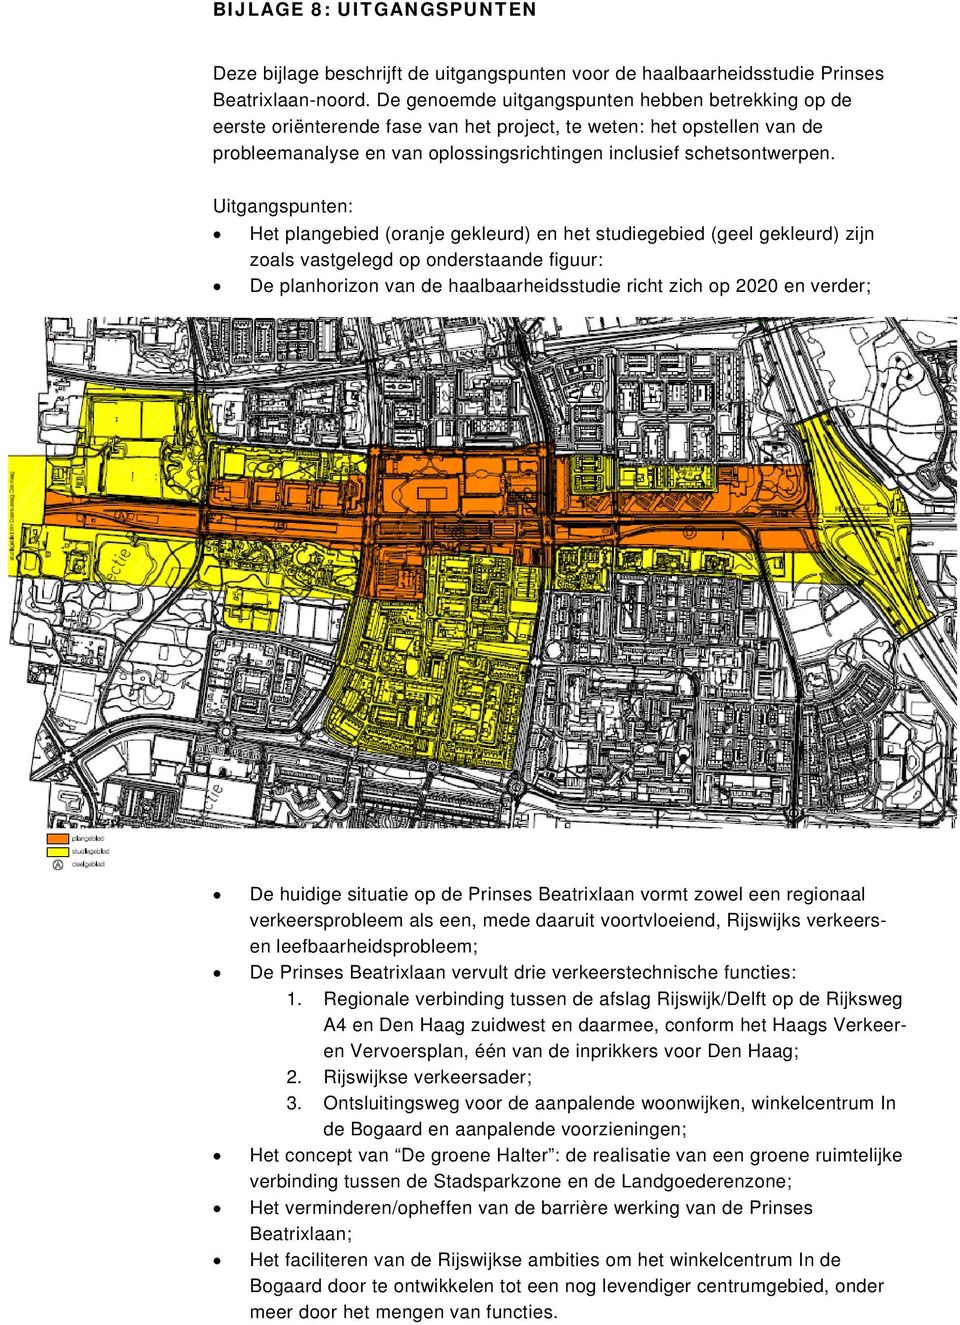 Uitgangspunten: Het plangebied (oranje gekleurd) en het studiegebied (geel gekleurd) zijn zoals vastgelegd op onderstaande figuur: De planhorizon van de haalbaarheidsstudie richt zich op 2020 en